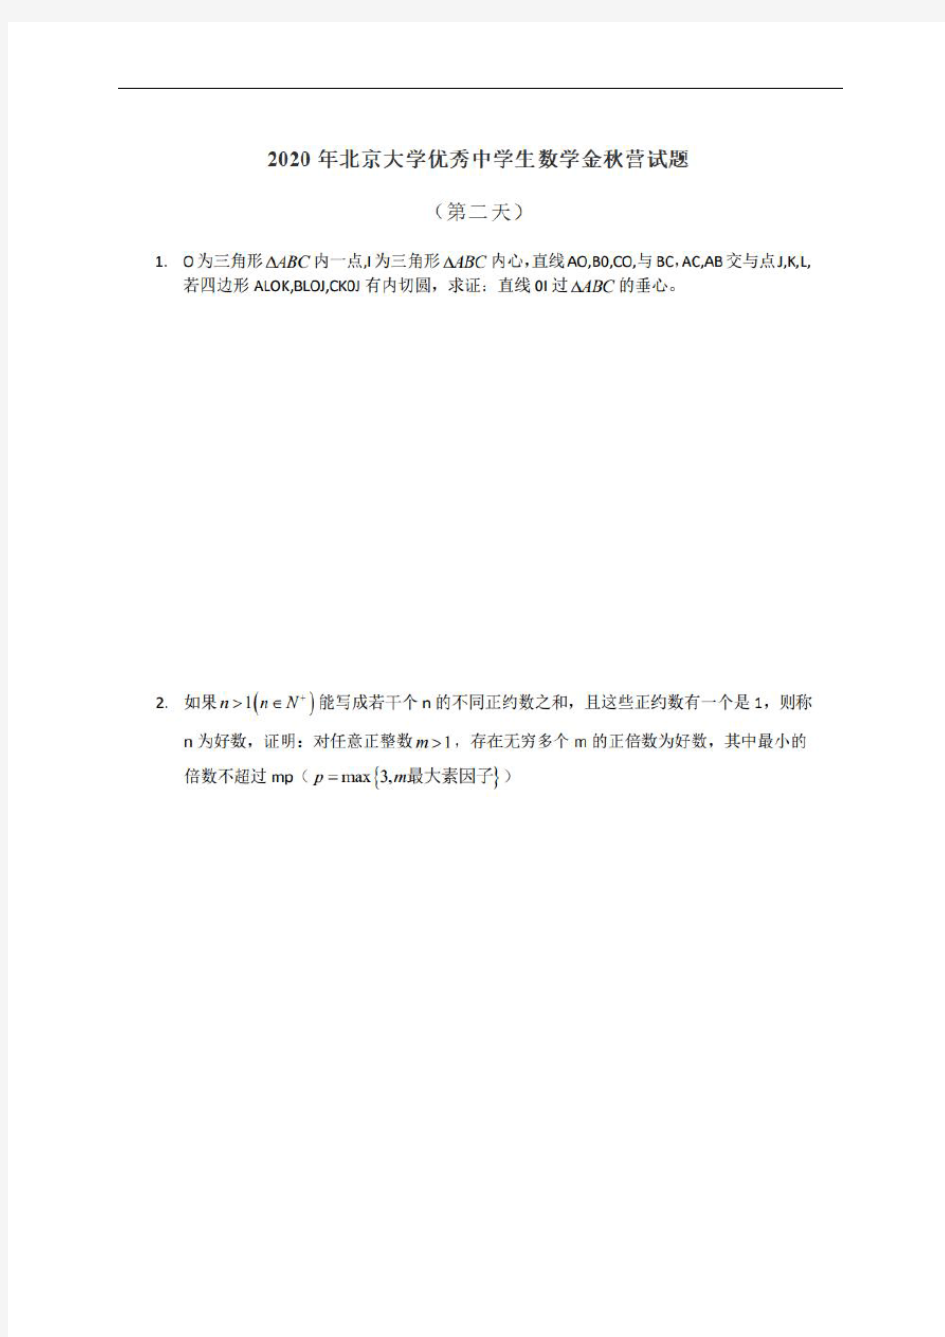 2020年北京大学优秀中学生数学金秋营测试(第二天)试题10.18(扫描版,无答案)